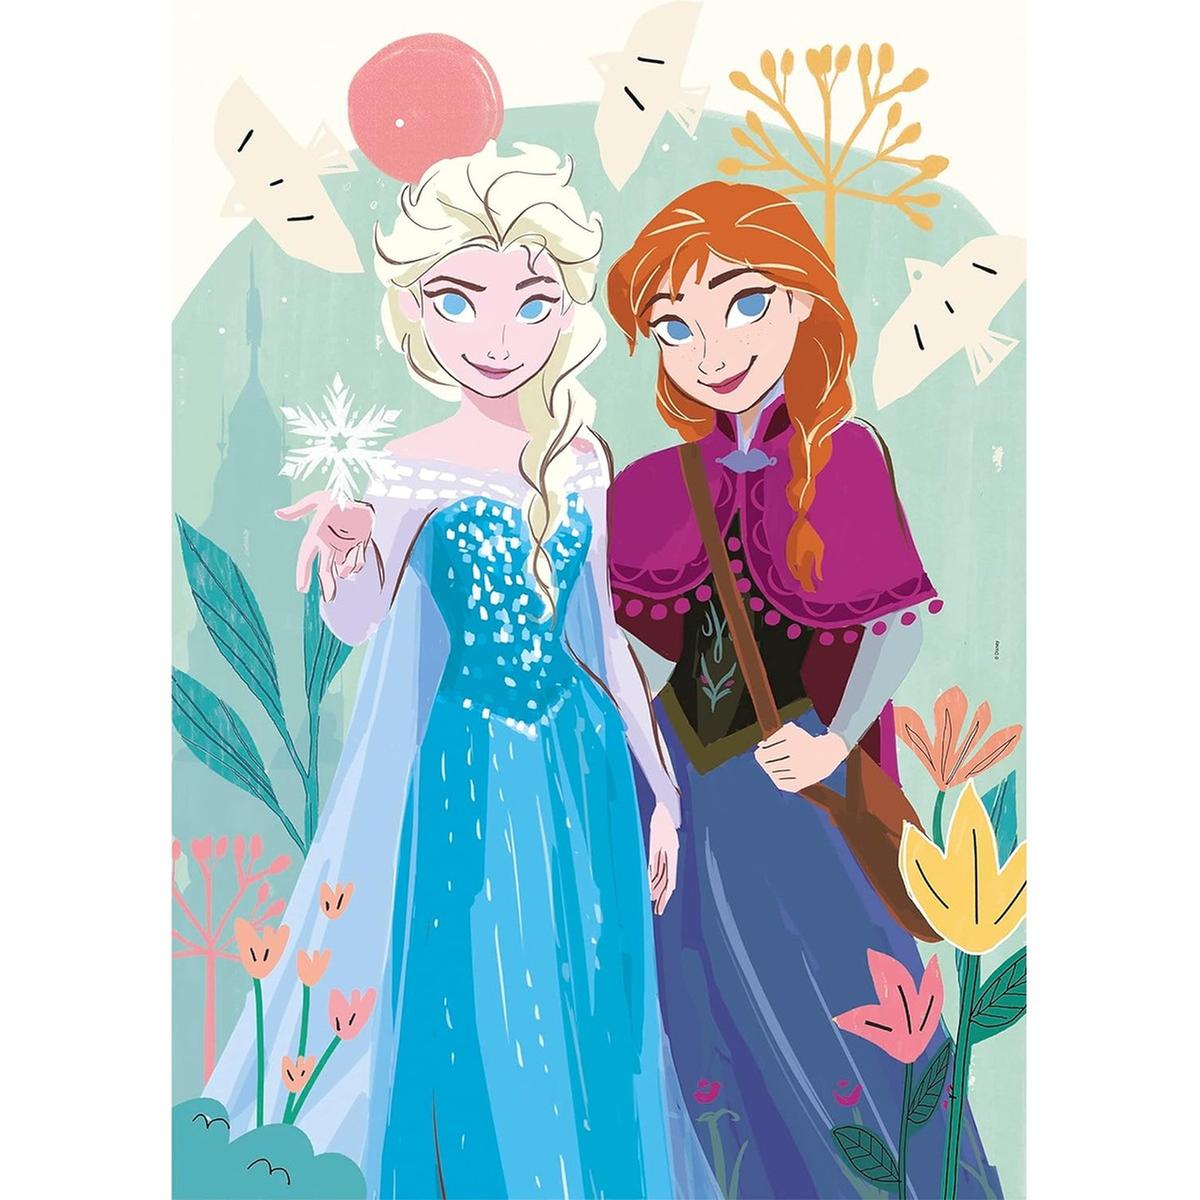 Jogo de Quebra Cabeça infantil jogos online Frozen Ana e Elsa